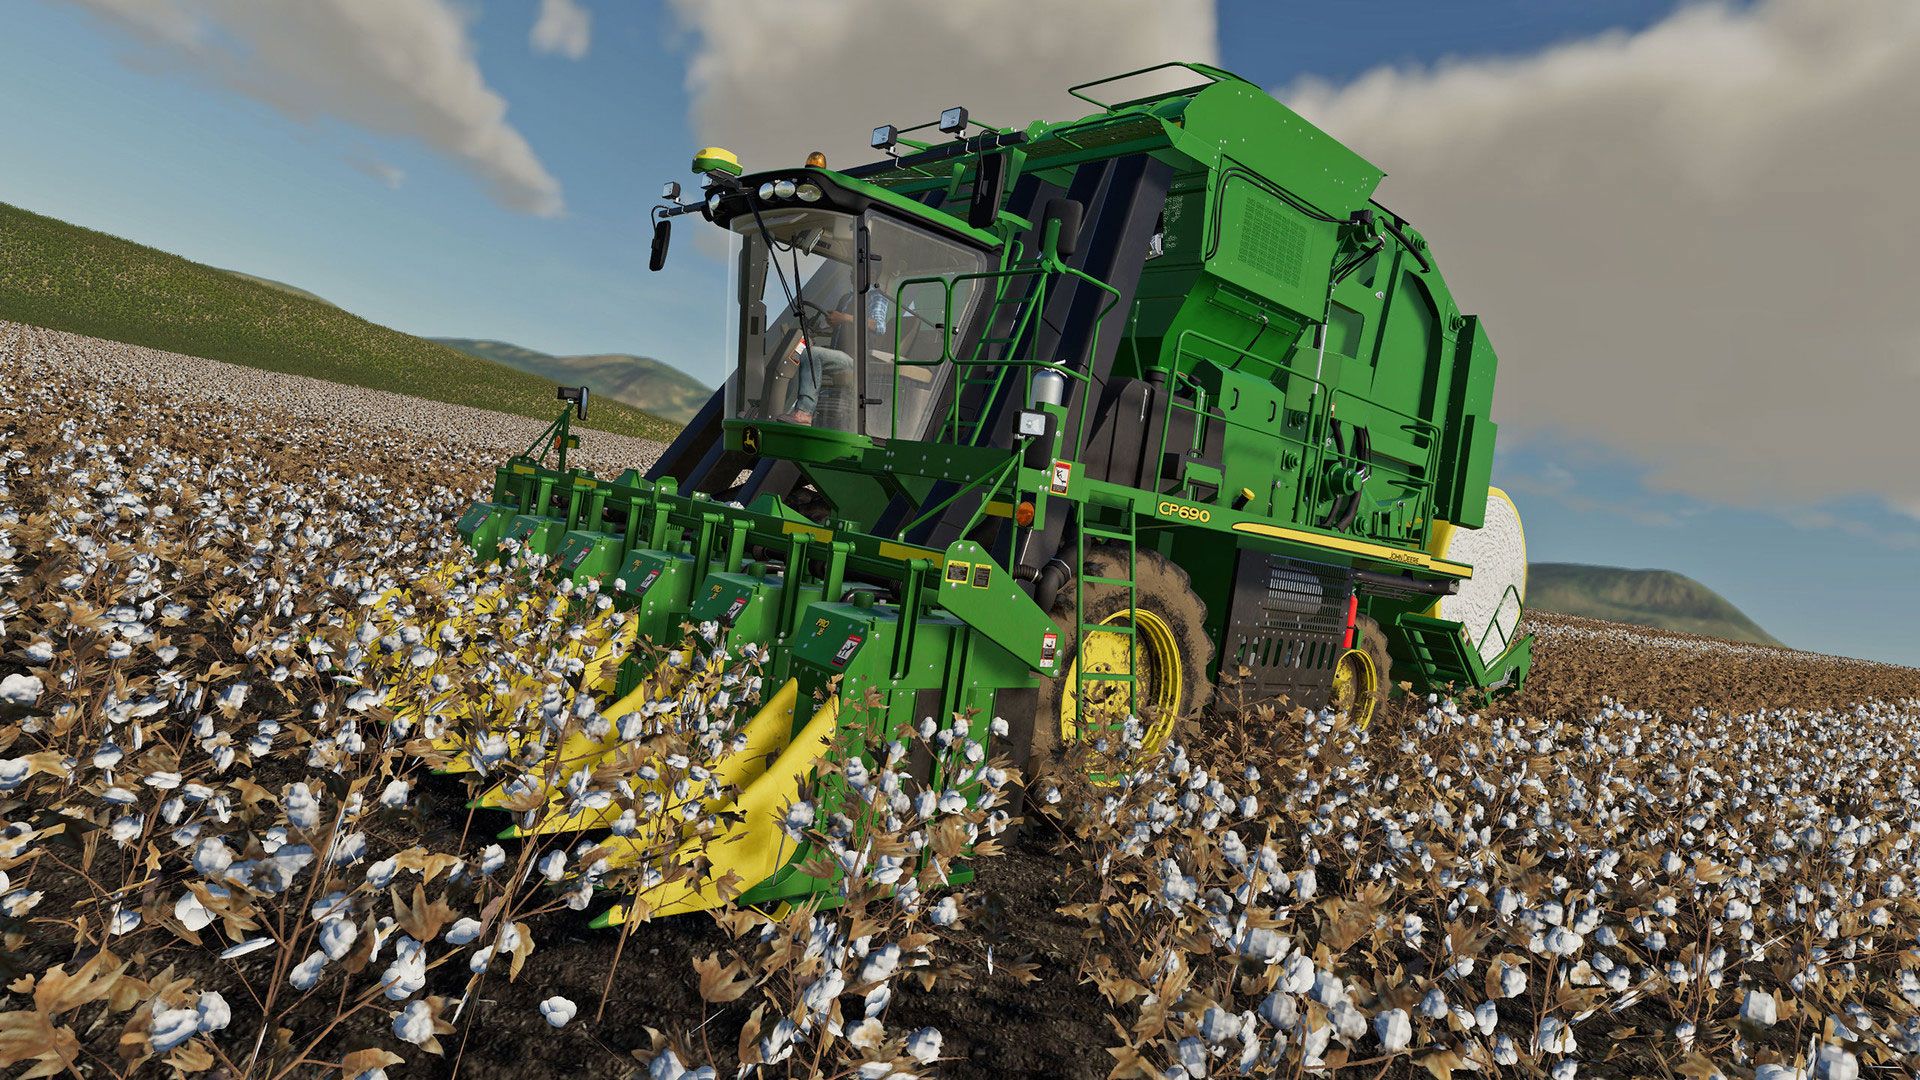 farming simulator 19 premium edition